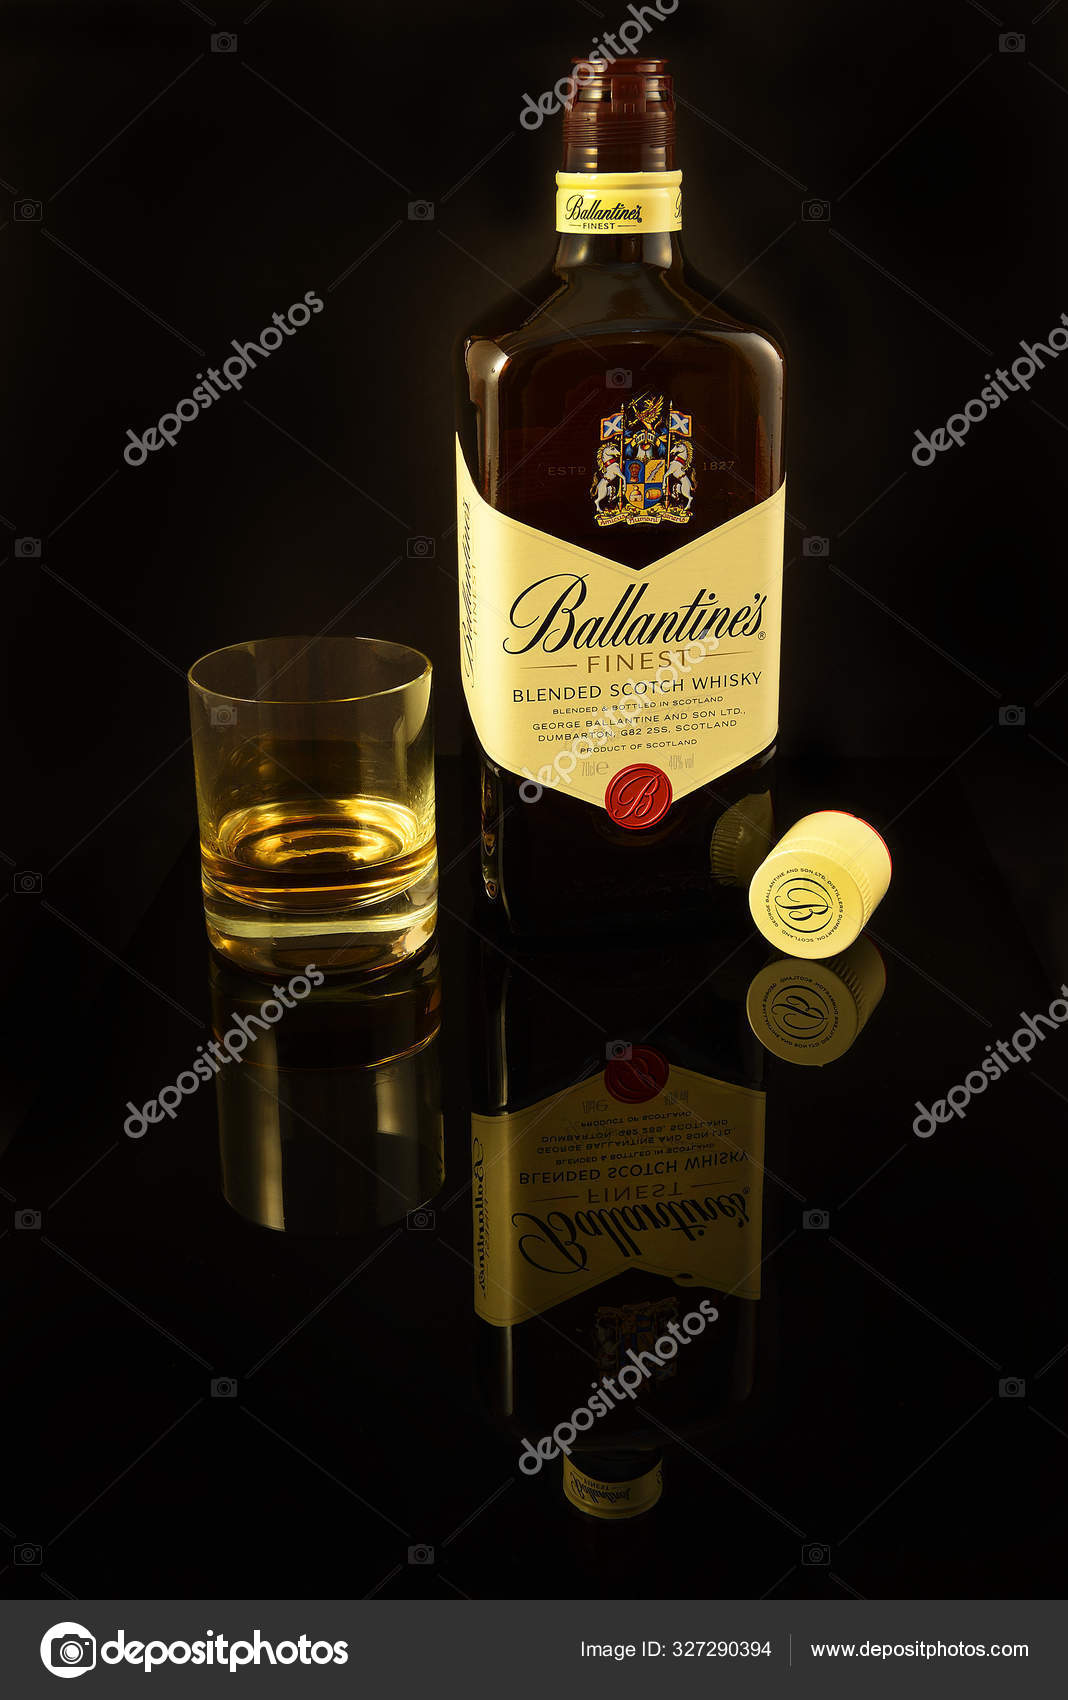 Ballantine's Finest blended Scotch Whisky